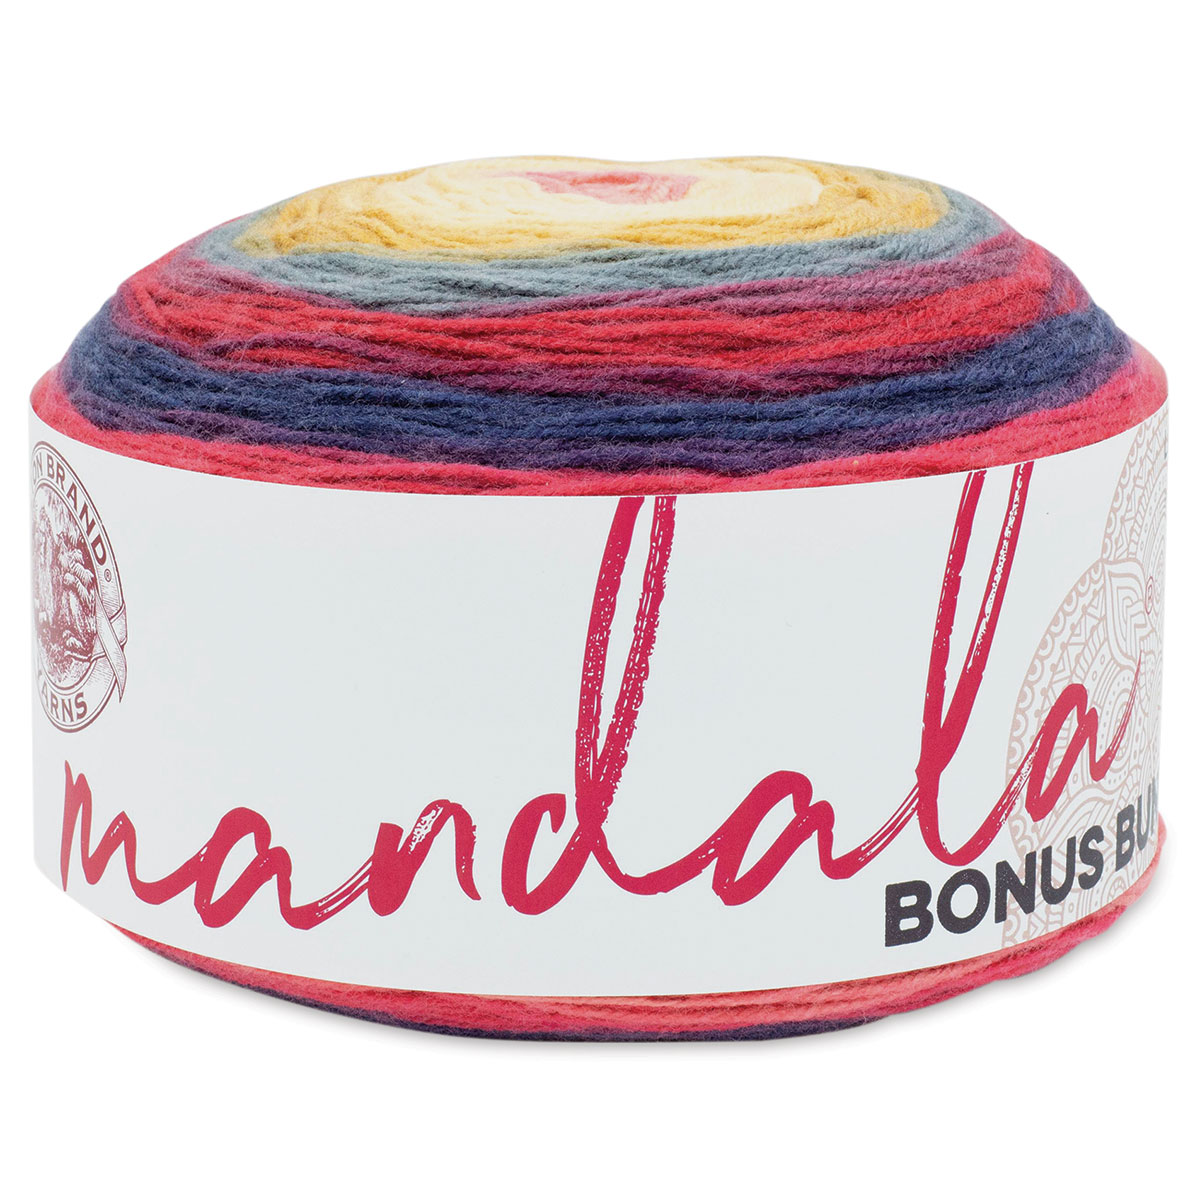 Lion Brand Mandala Yarn Cakes